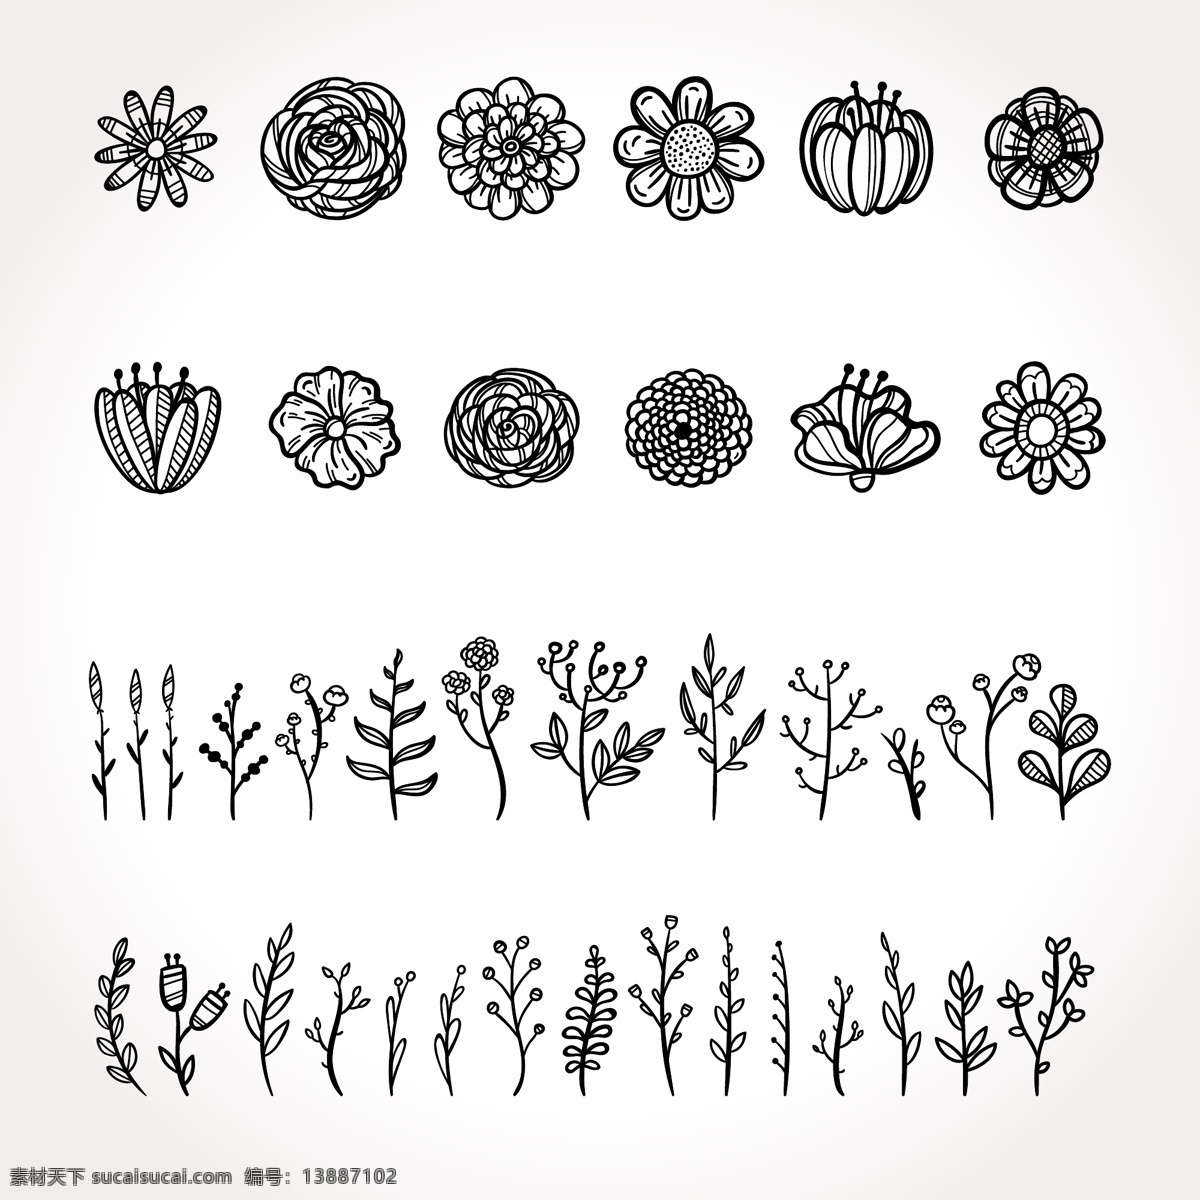 原创 手绘 风格 花卉 植物 元素 贴纸 装饰 复古 钢笔画 贴图